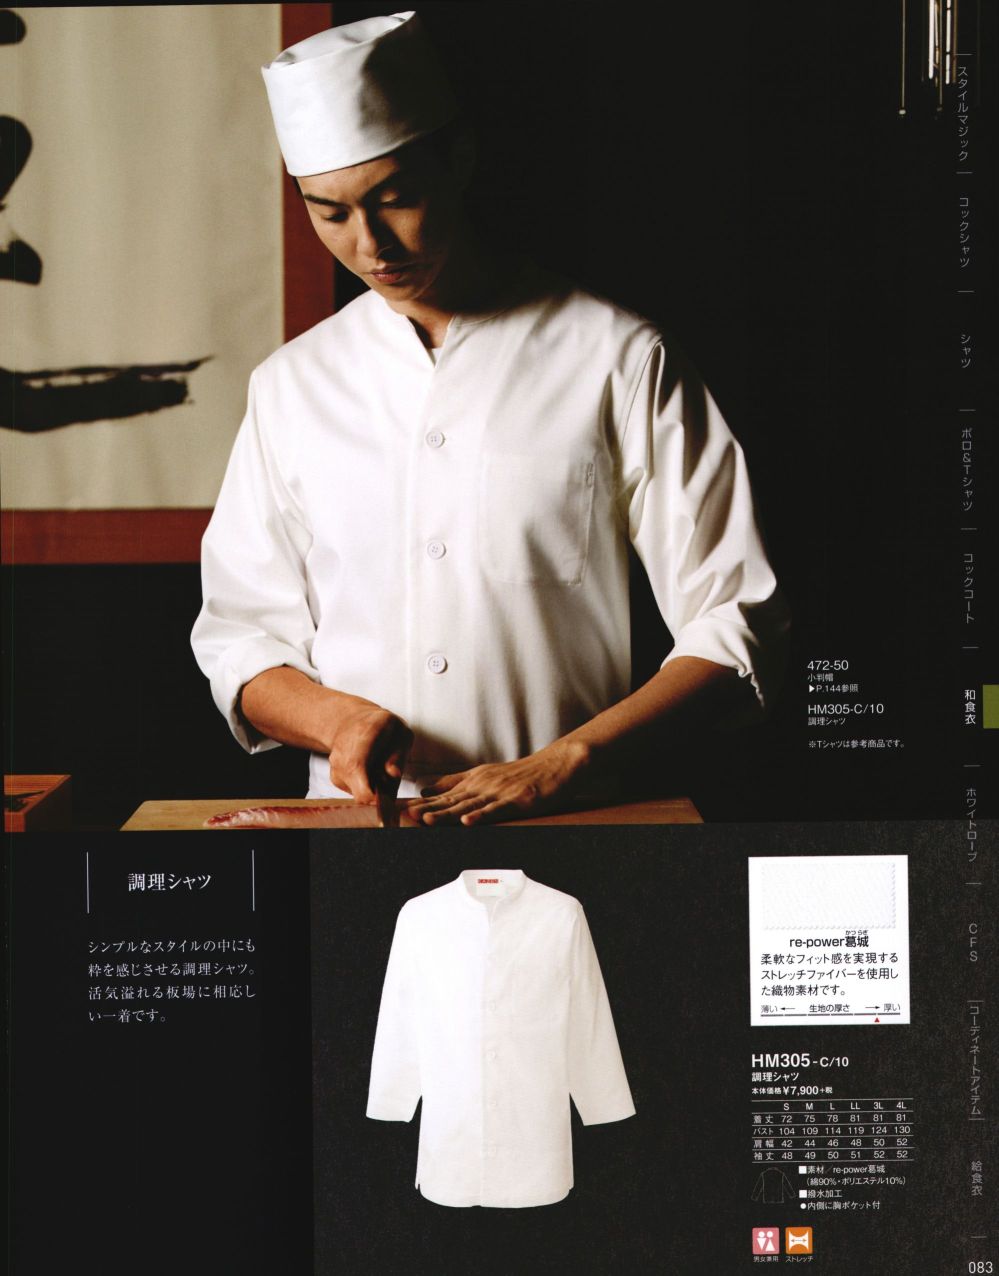 ユニフォーム1.COM 食品白衣jp 厨房・調理・売店用白衣 KAZEN カゼン